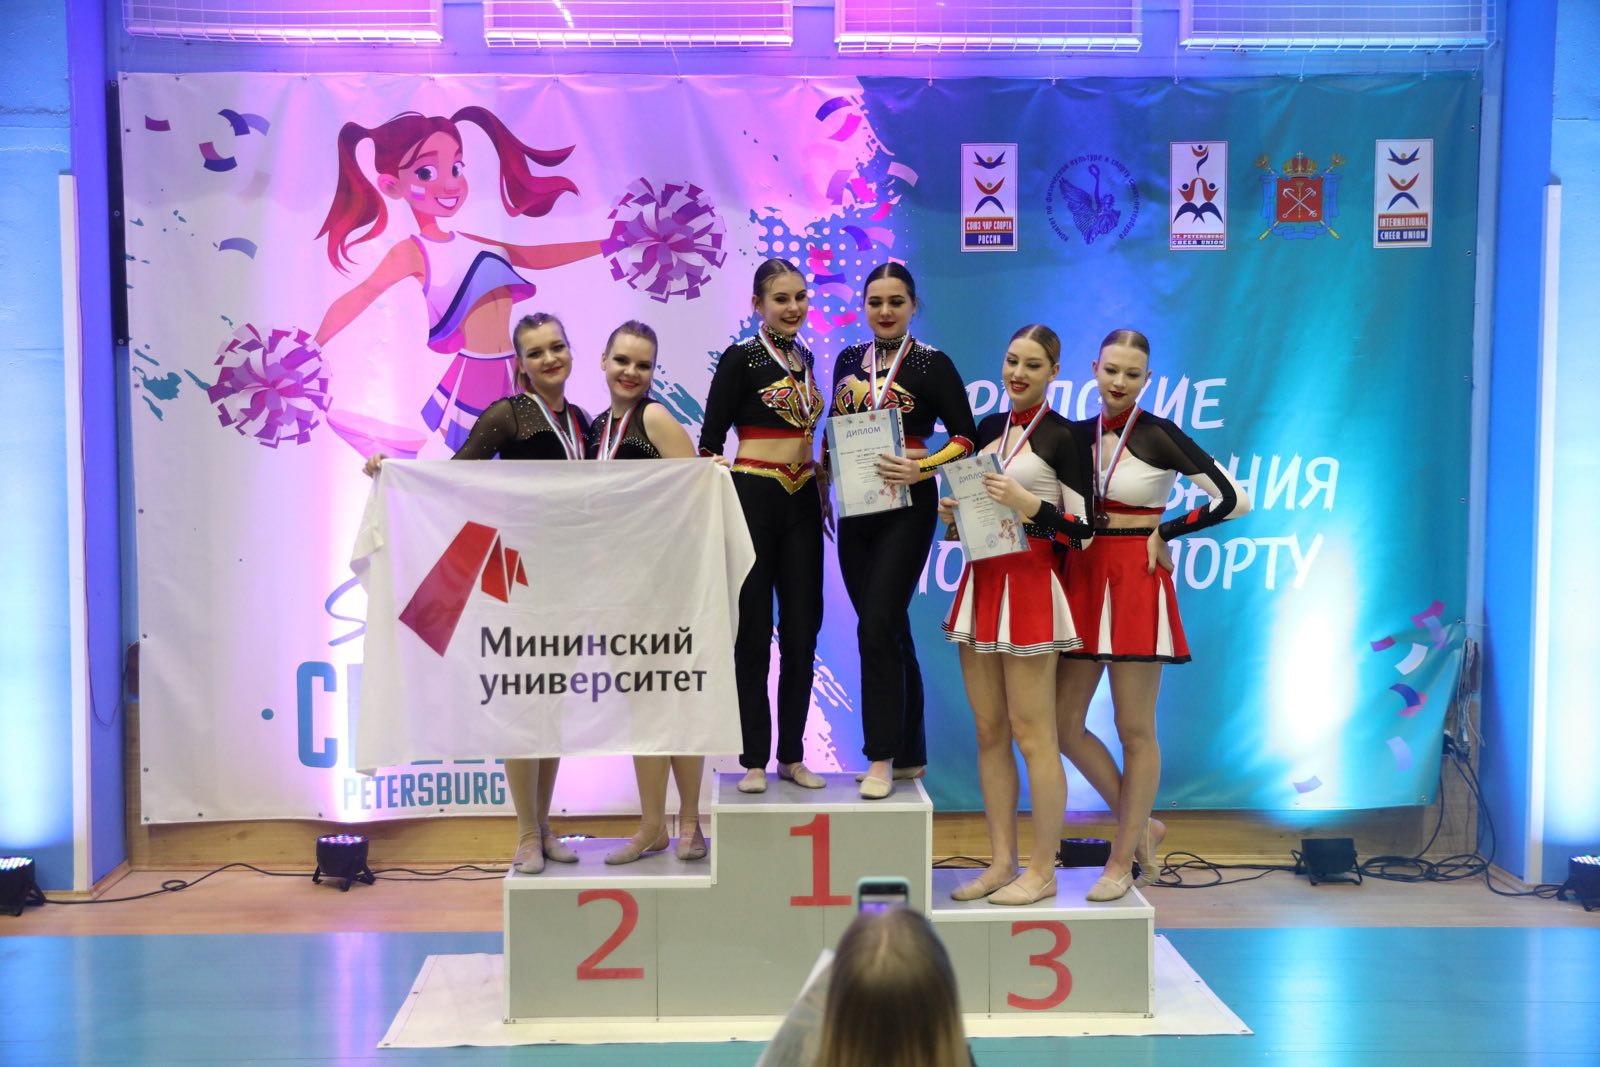 Студенты Мининского стали призерами соревнований по чир спорту